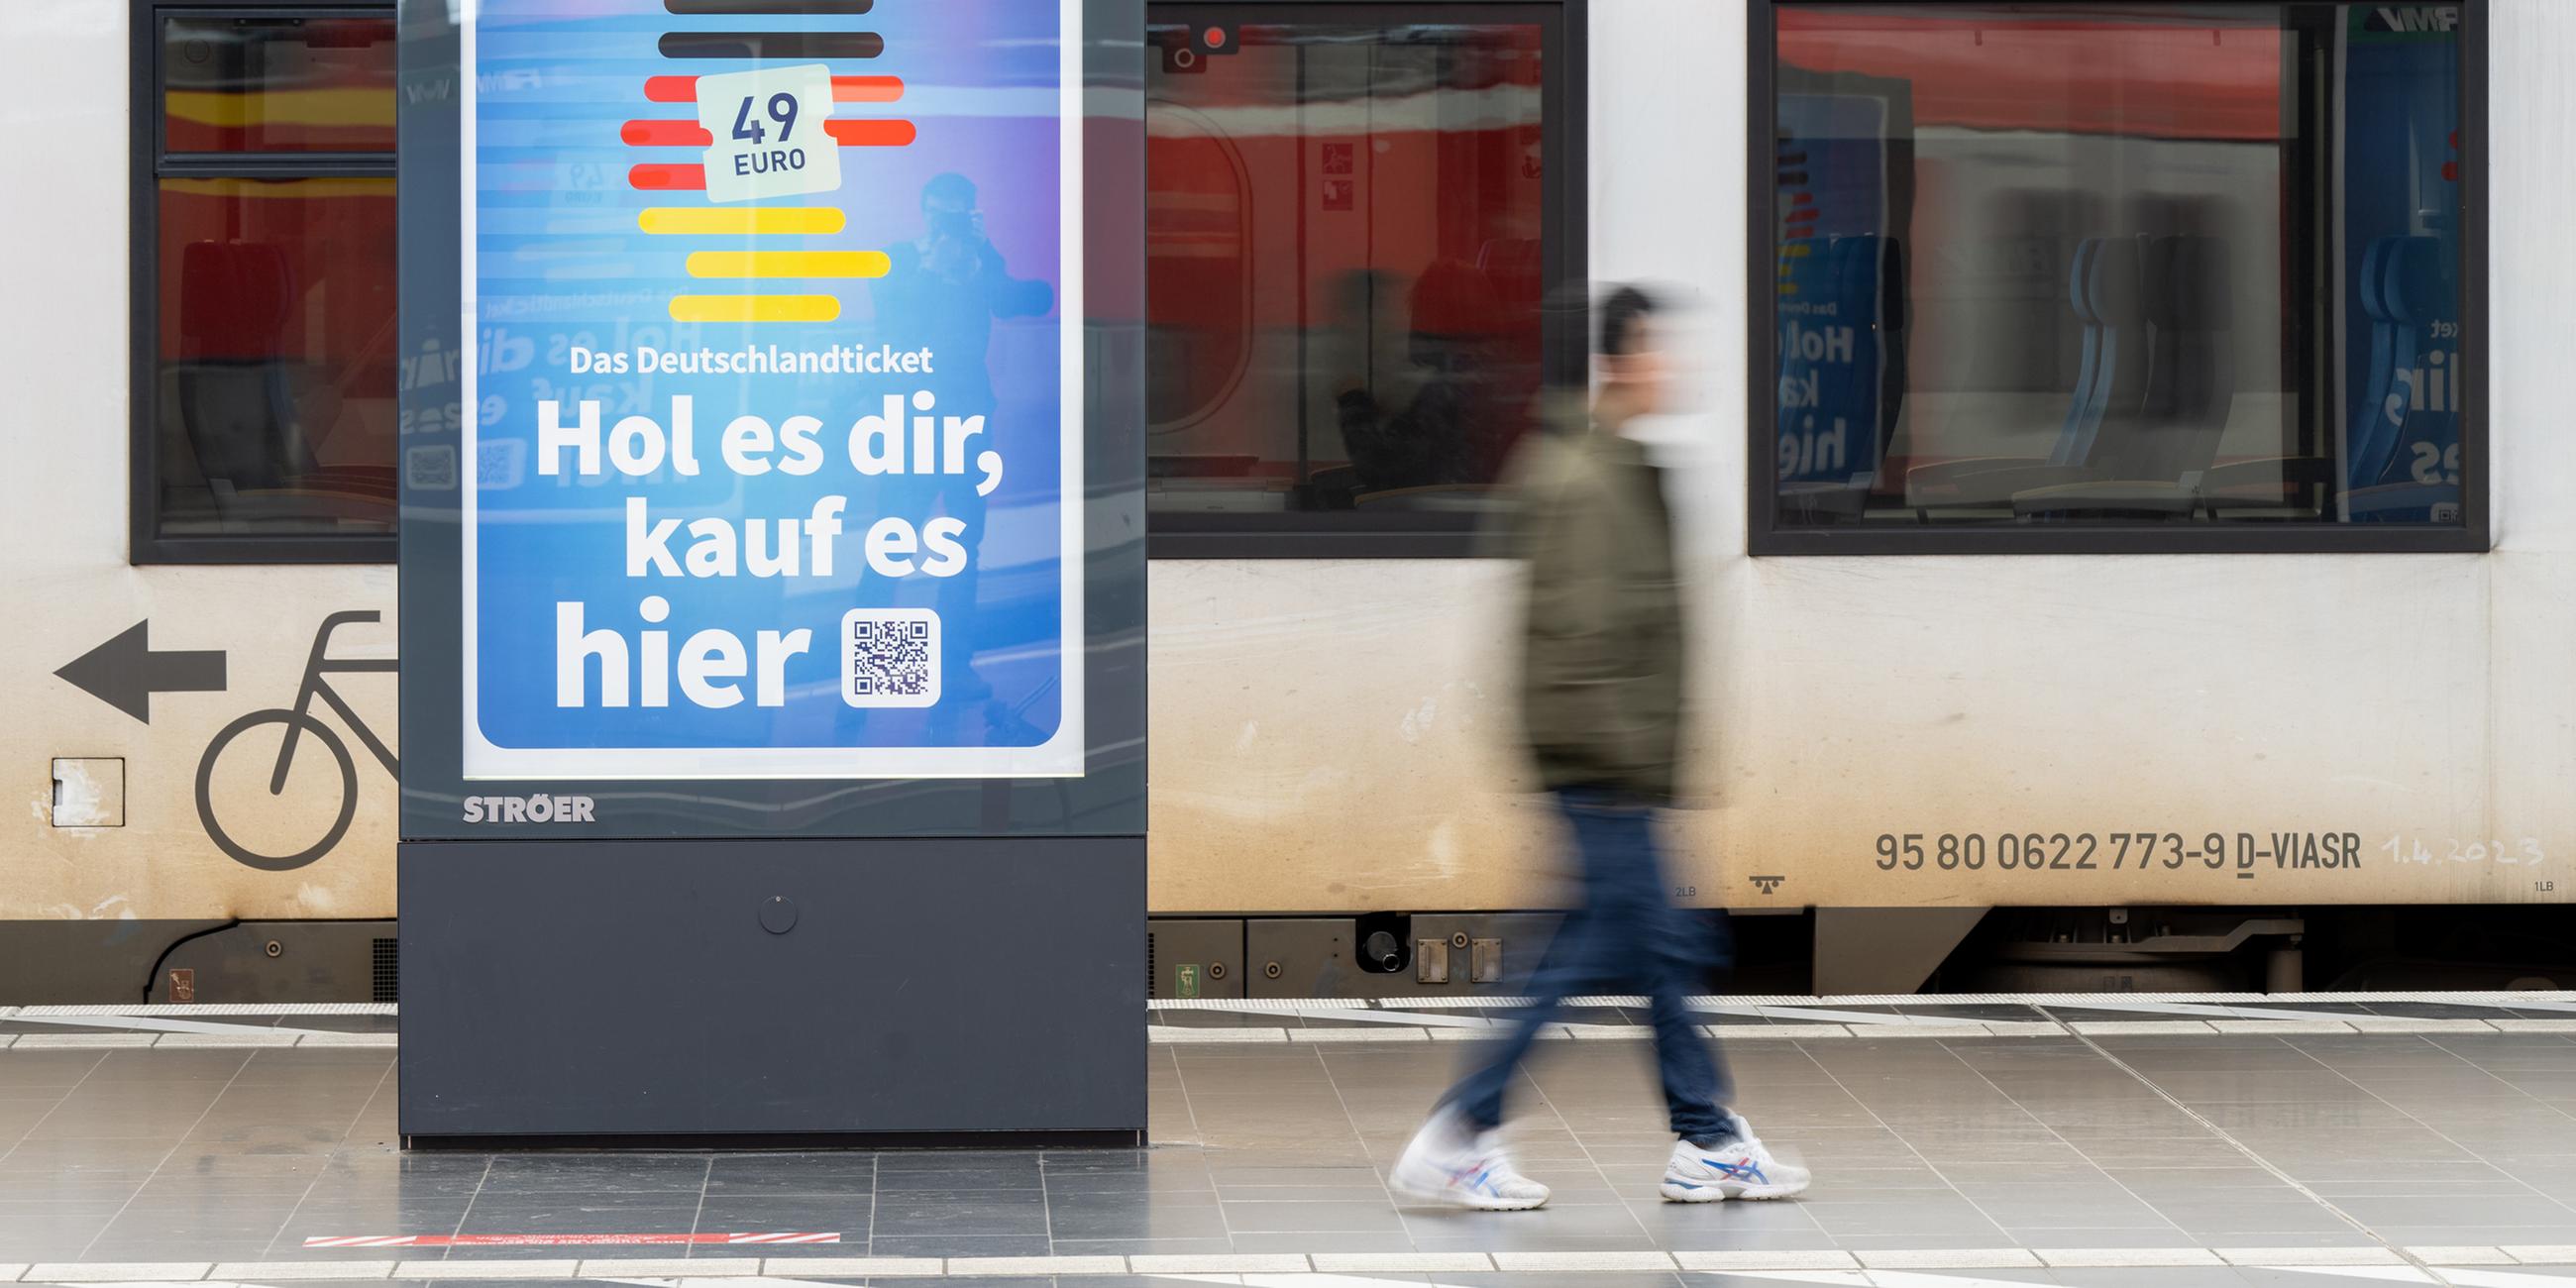 Die Werbung für das Deutschlandticket ist am Hauptbahnhof in Frankfurt a.M. vor einer Bahn des ÖPNV zu sehen.